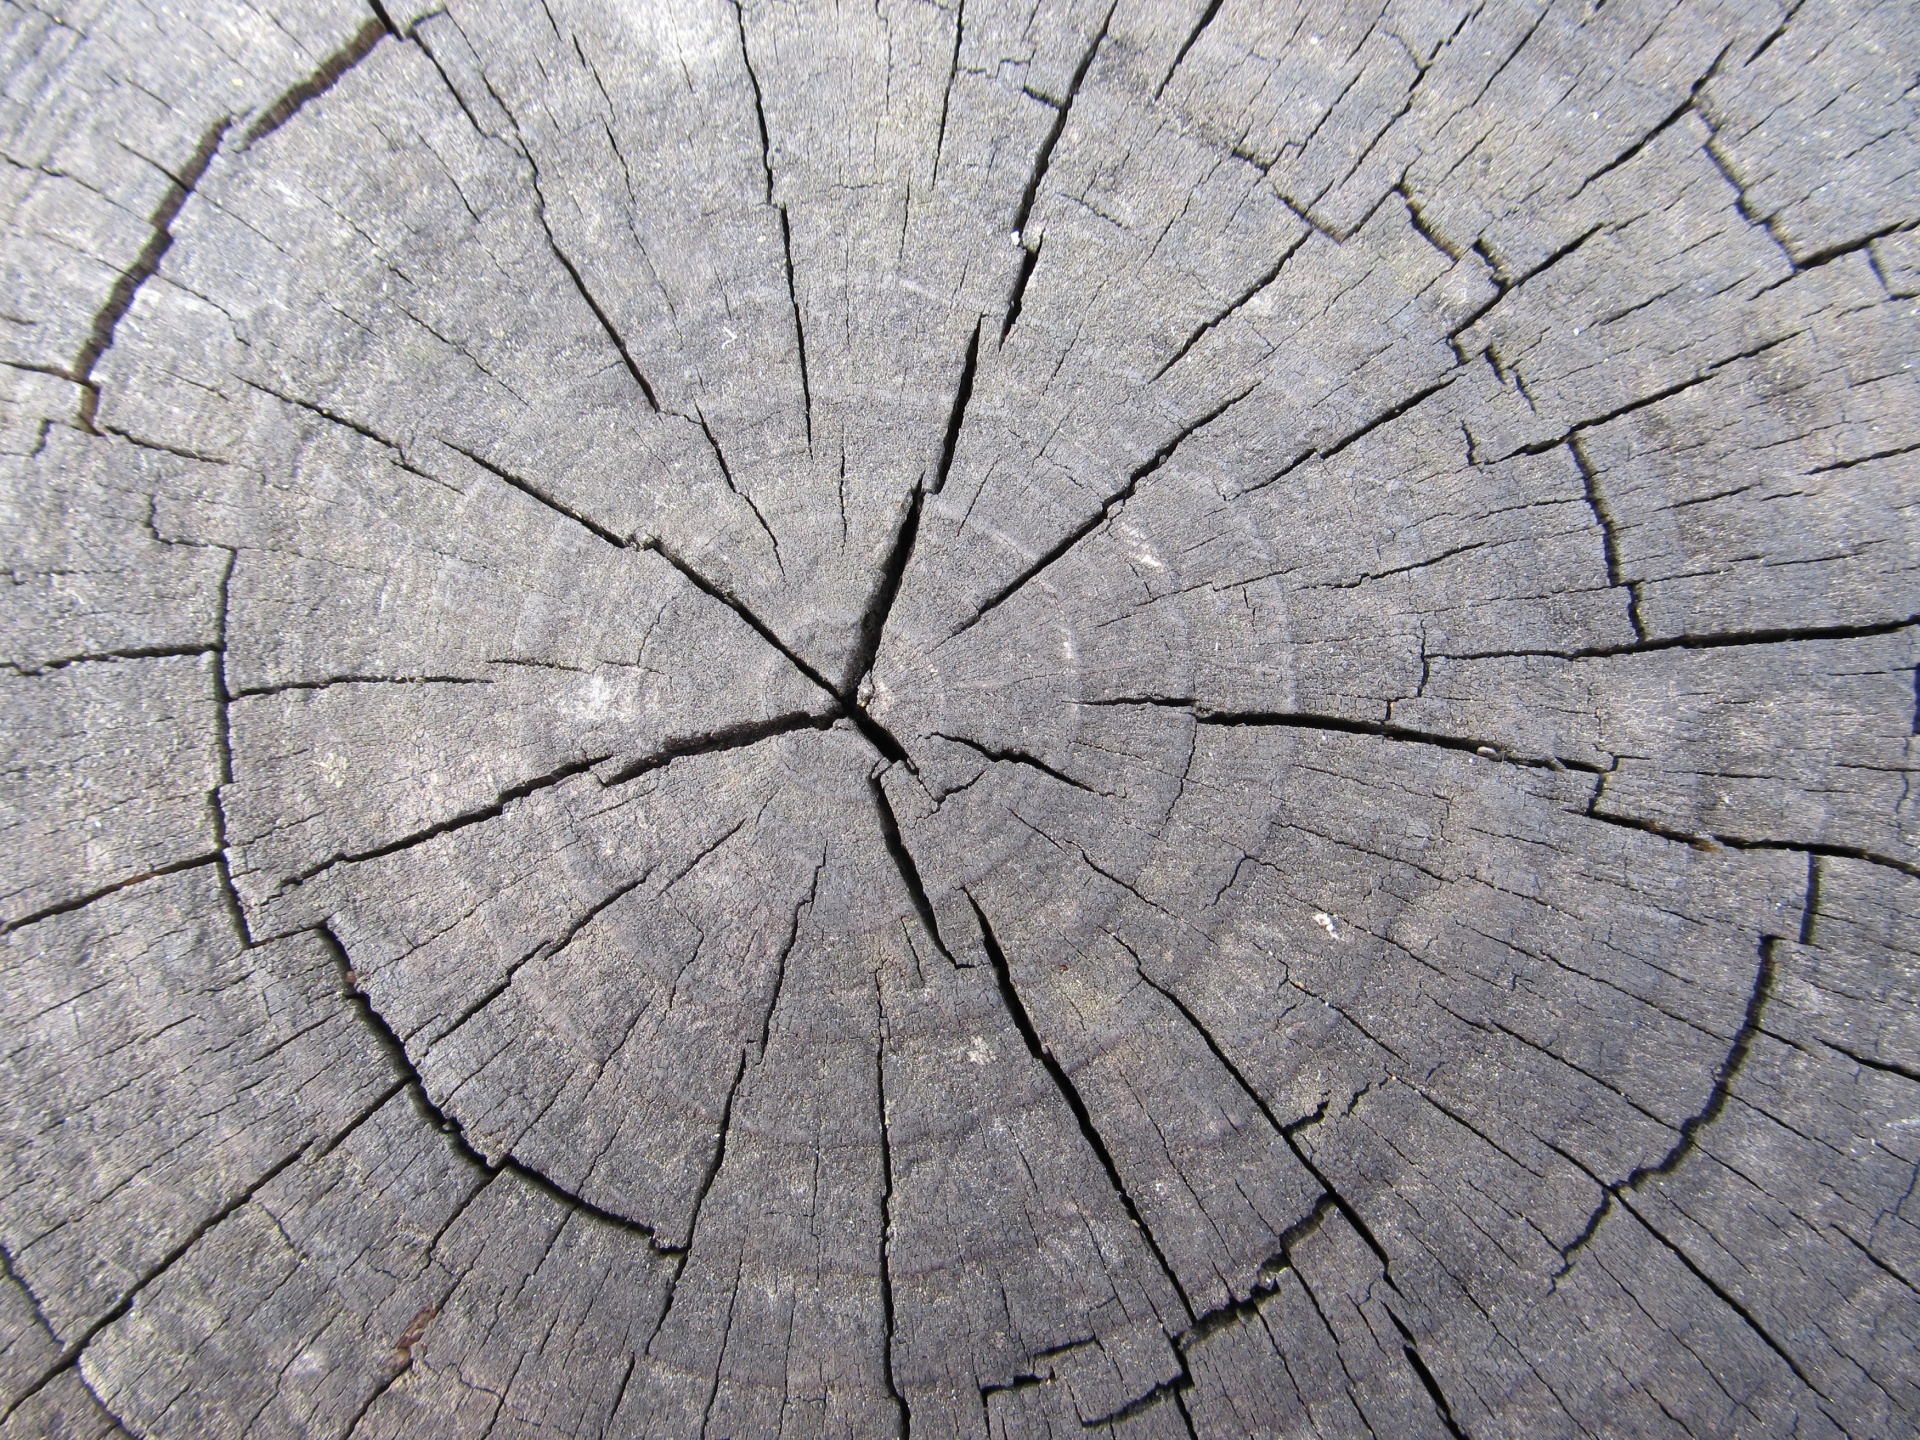 Трещина 4 буквы. Трещина в дереве. Трещины древесины. Срез дерева. Текстура дерева с трещинами.